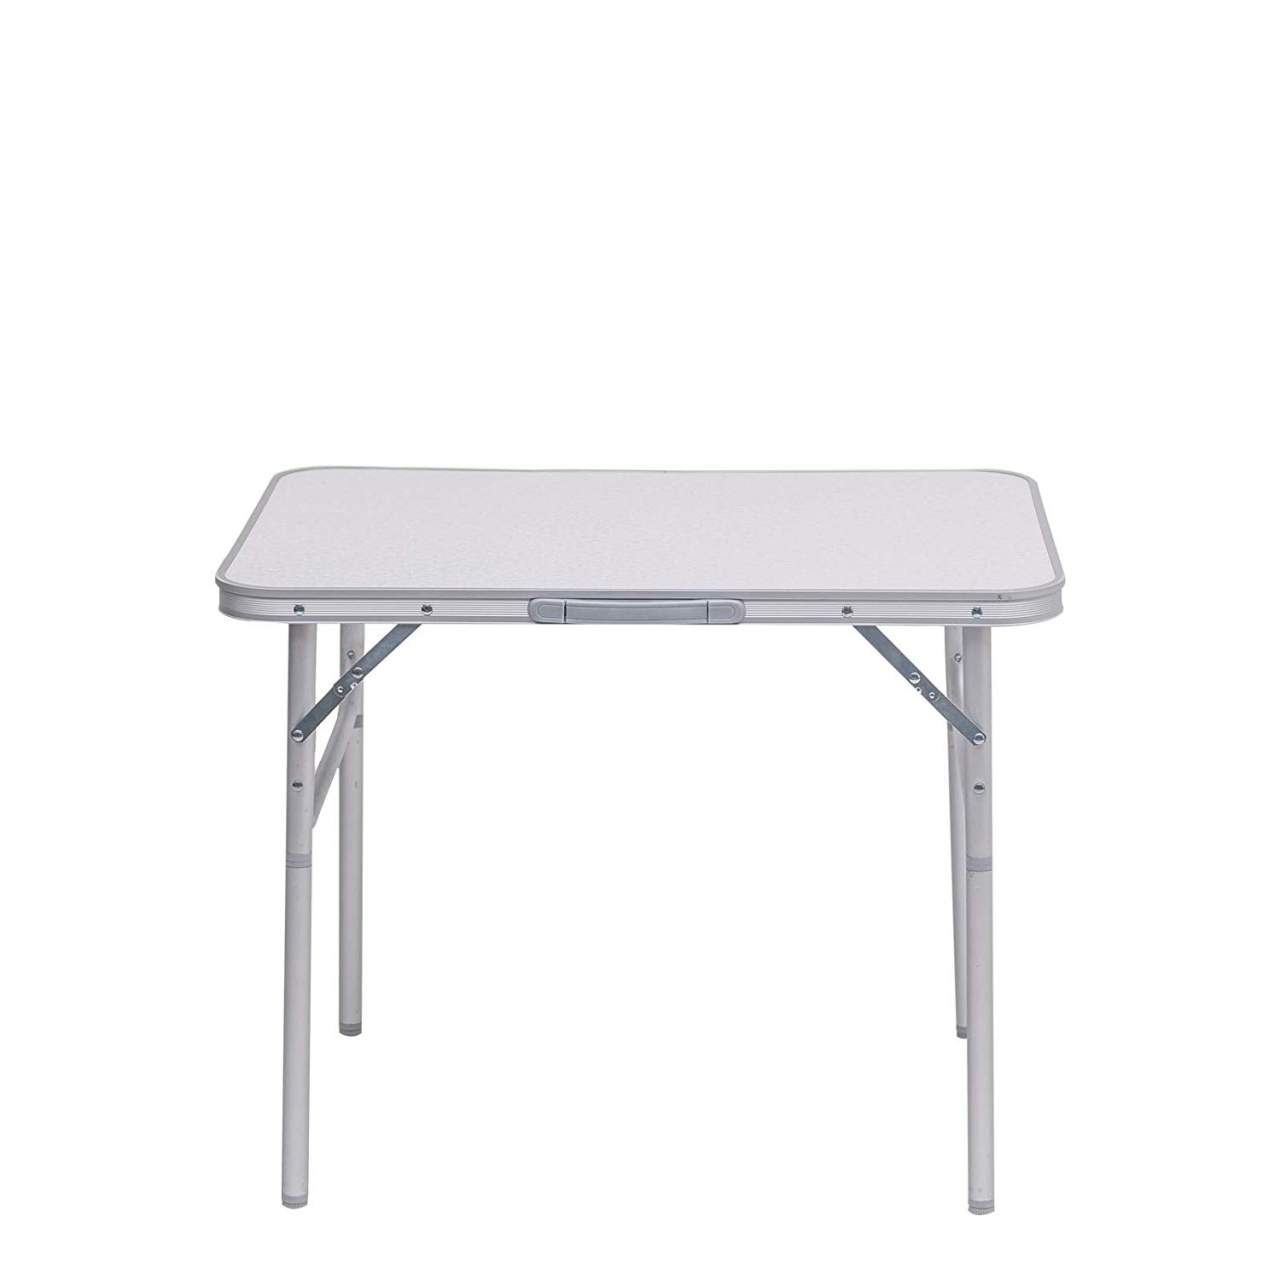 Campingtisch 60x80cm Alu MDF Klapptisch Esstisch Picknick Gartentisch Tisch 